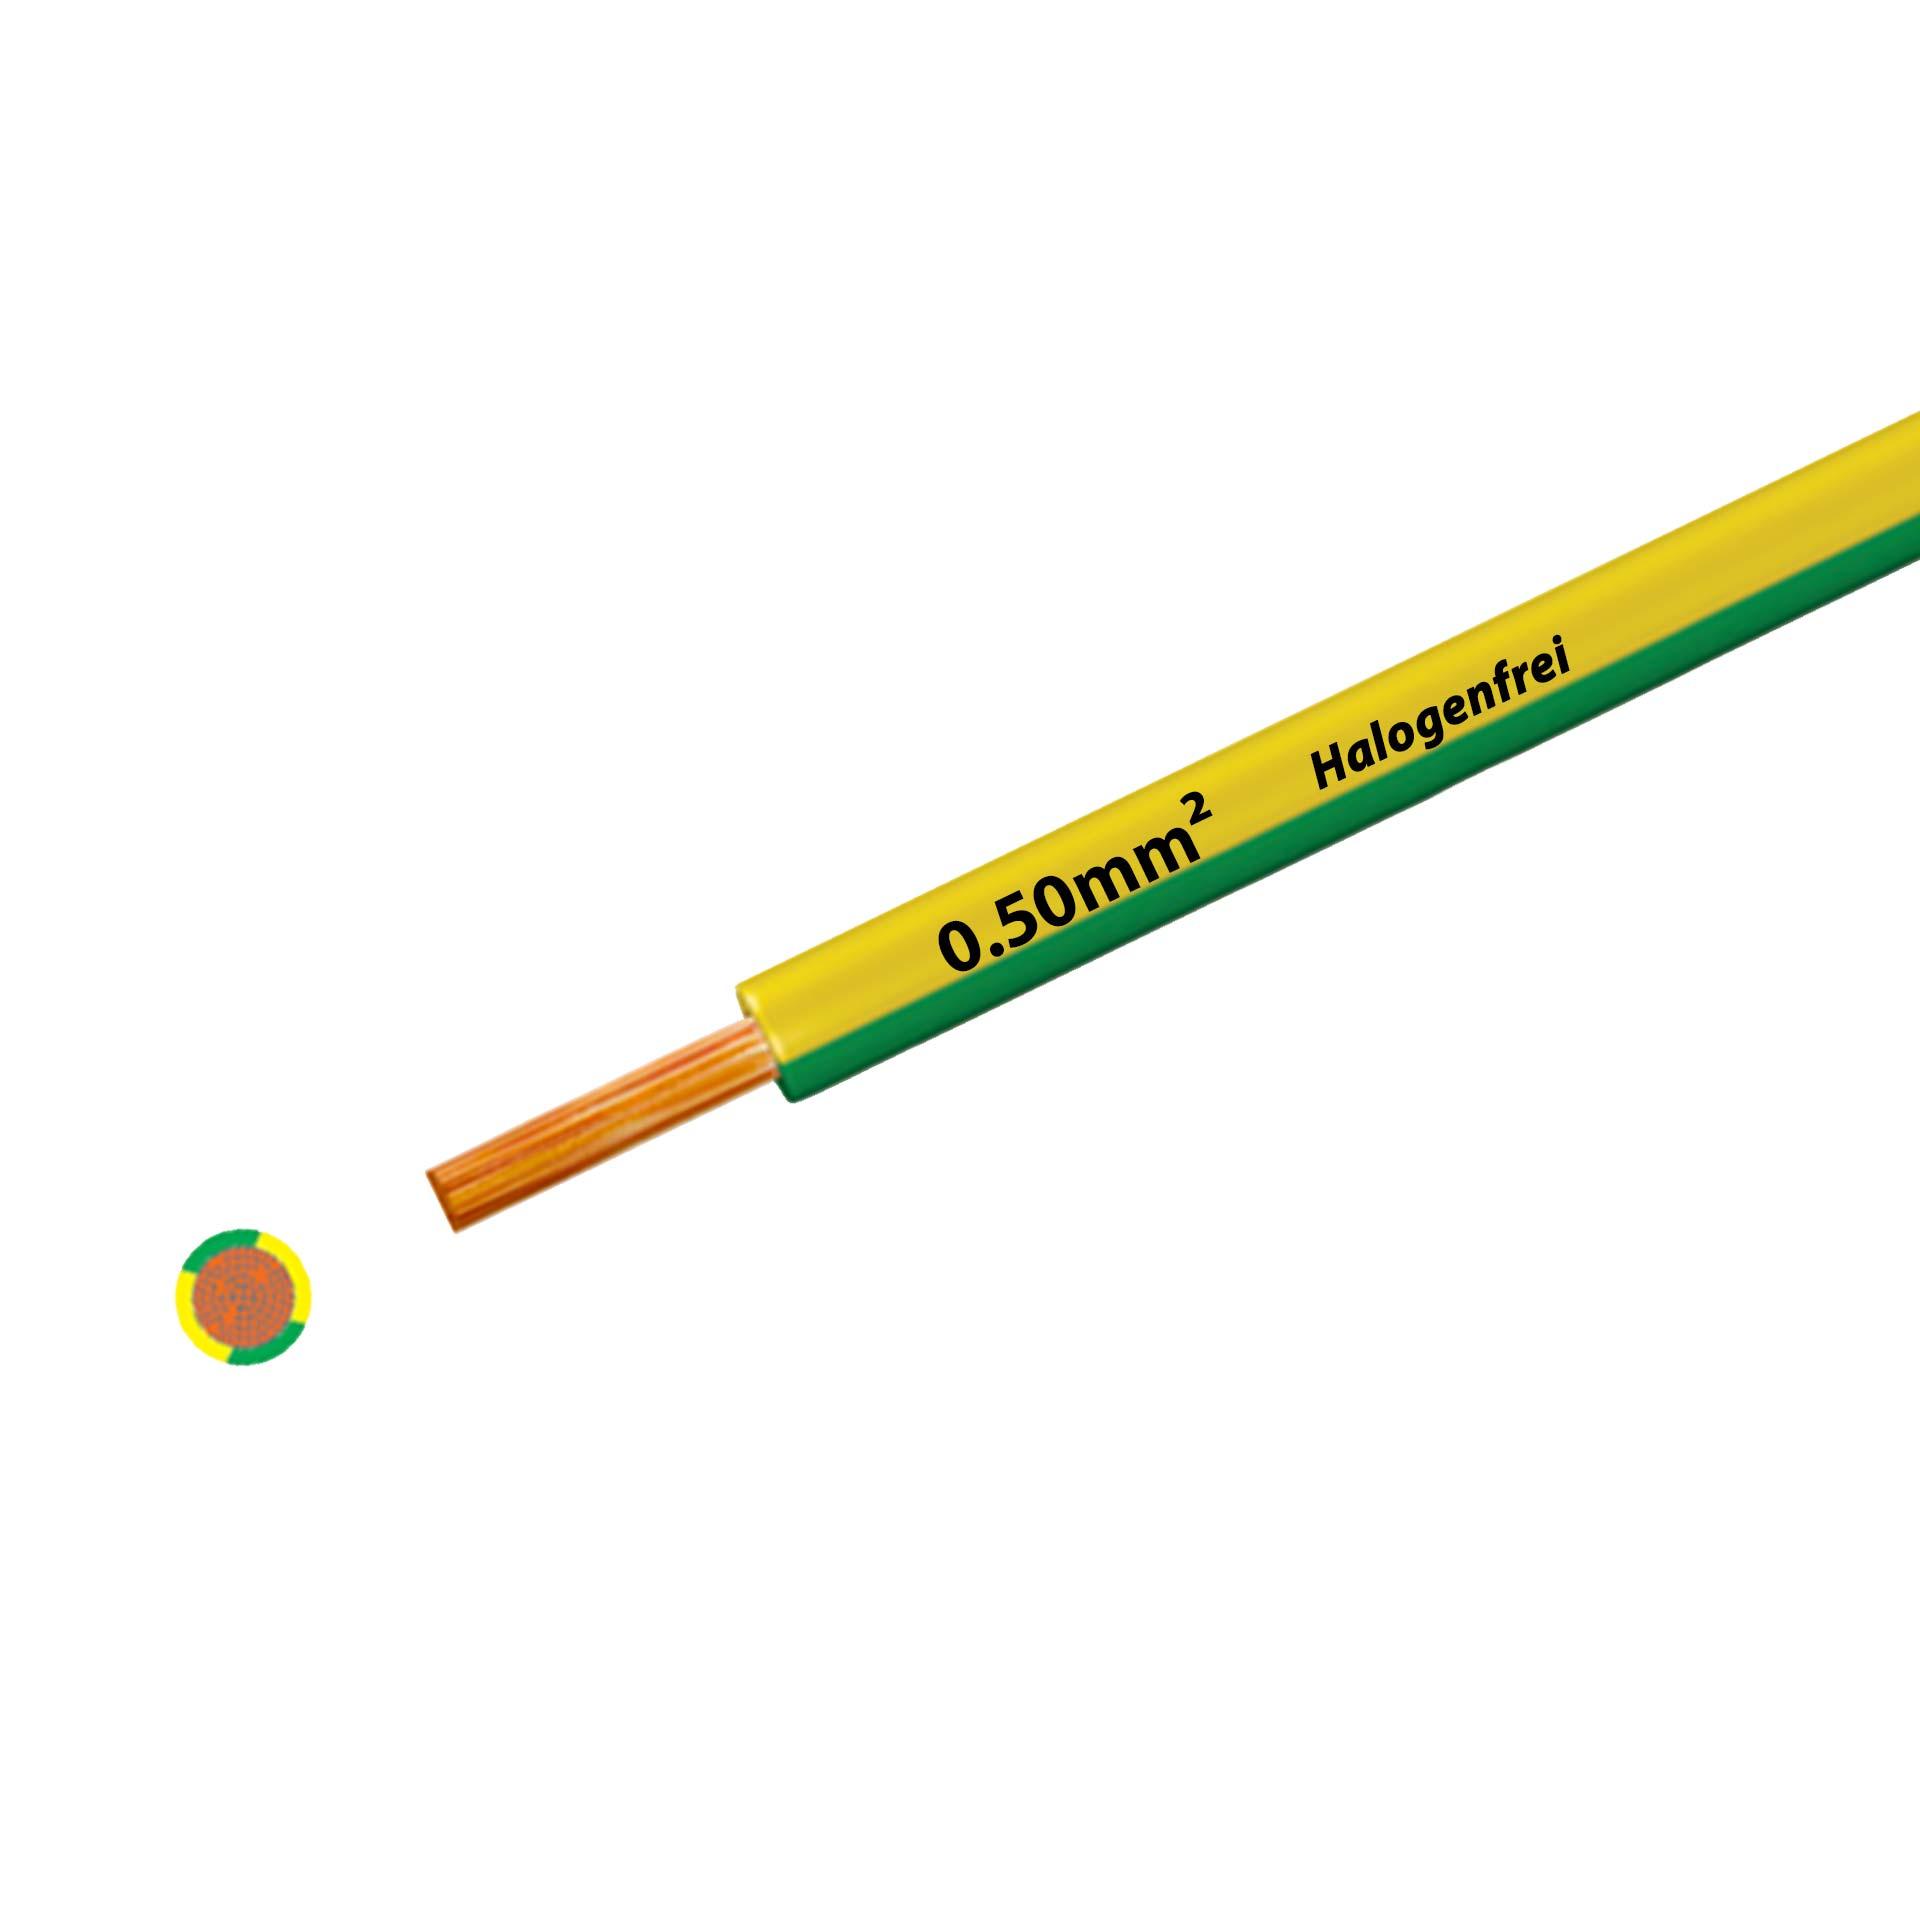 Litze halogenfrei 90° C , 500V, 0.50 mm2, gelb-grün (RAL 1021/6018), auf Kunststoffrolle